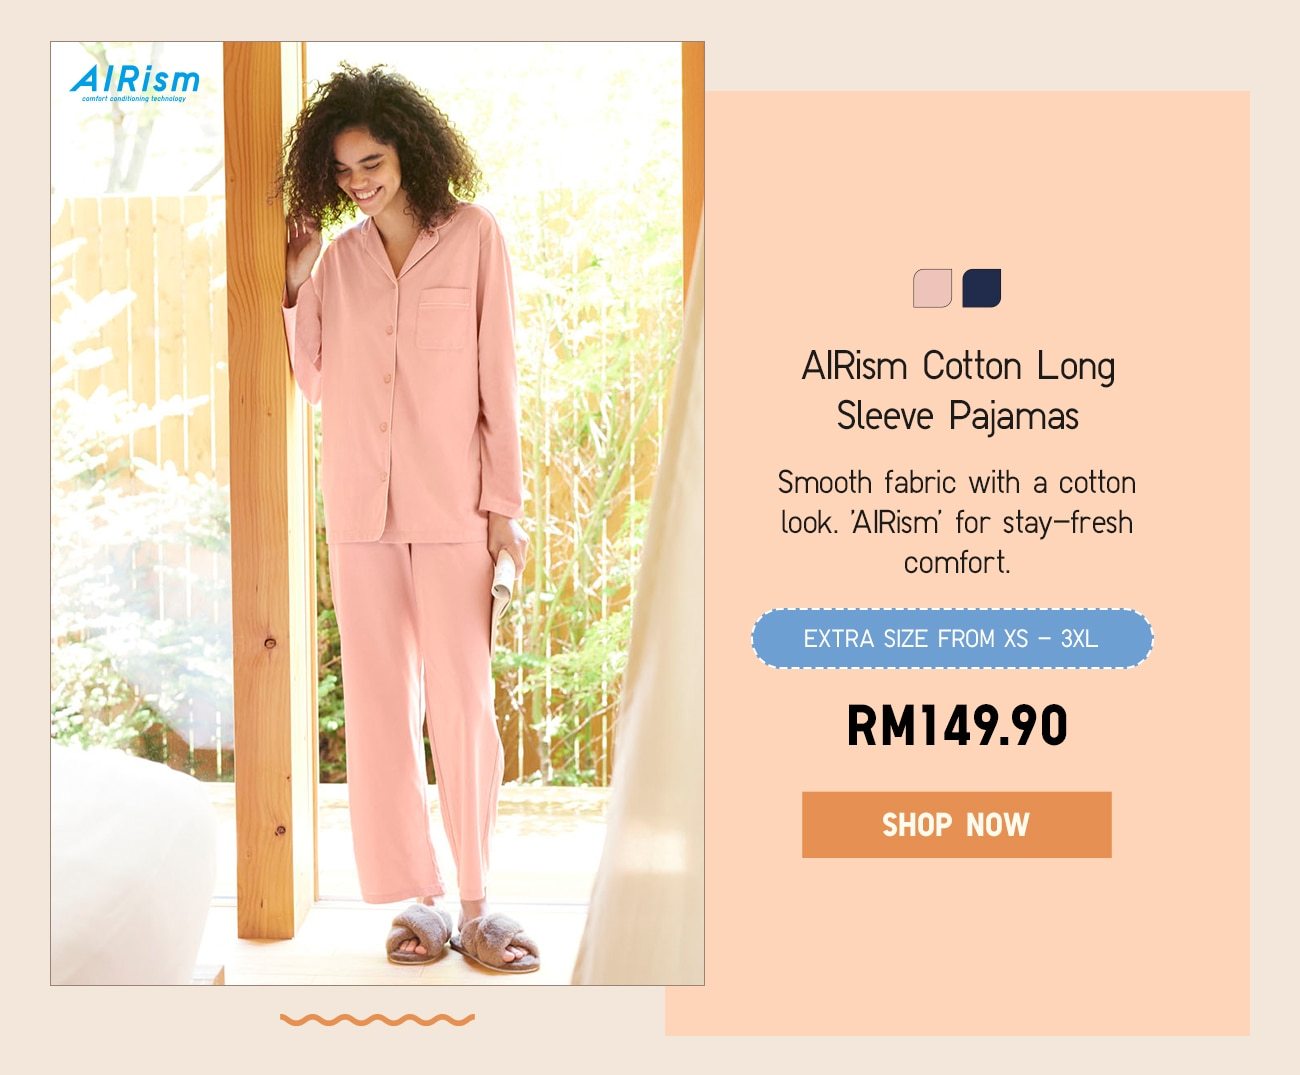 AIRism Cotton Long Sleeve Pajamas